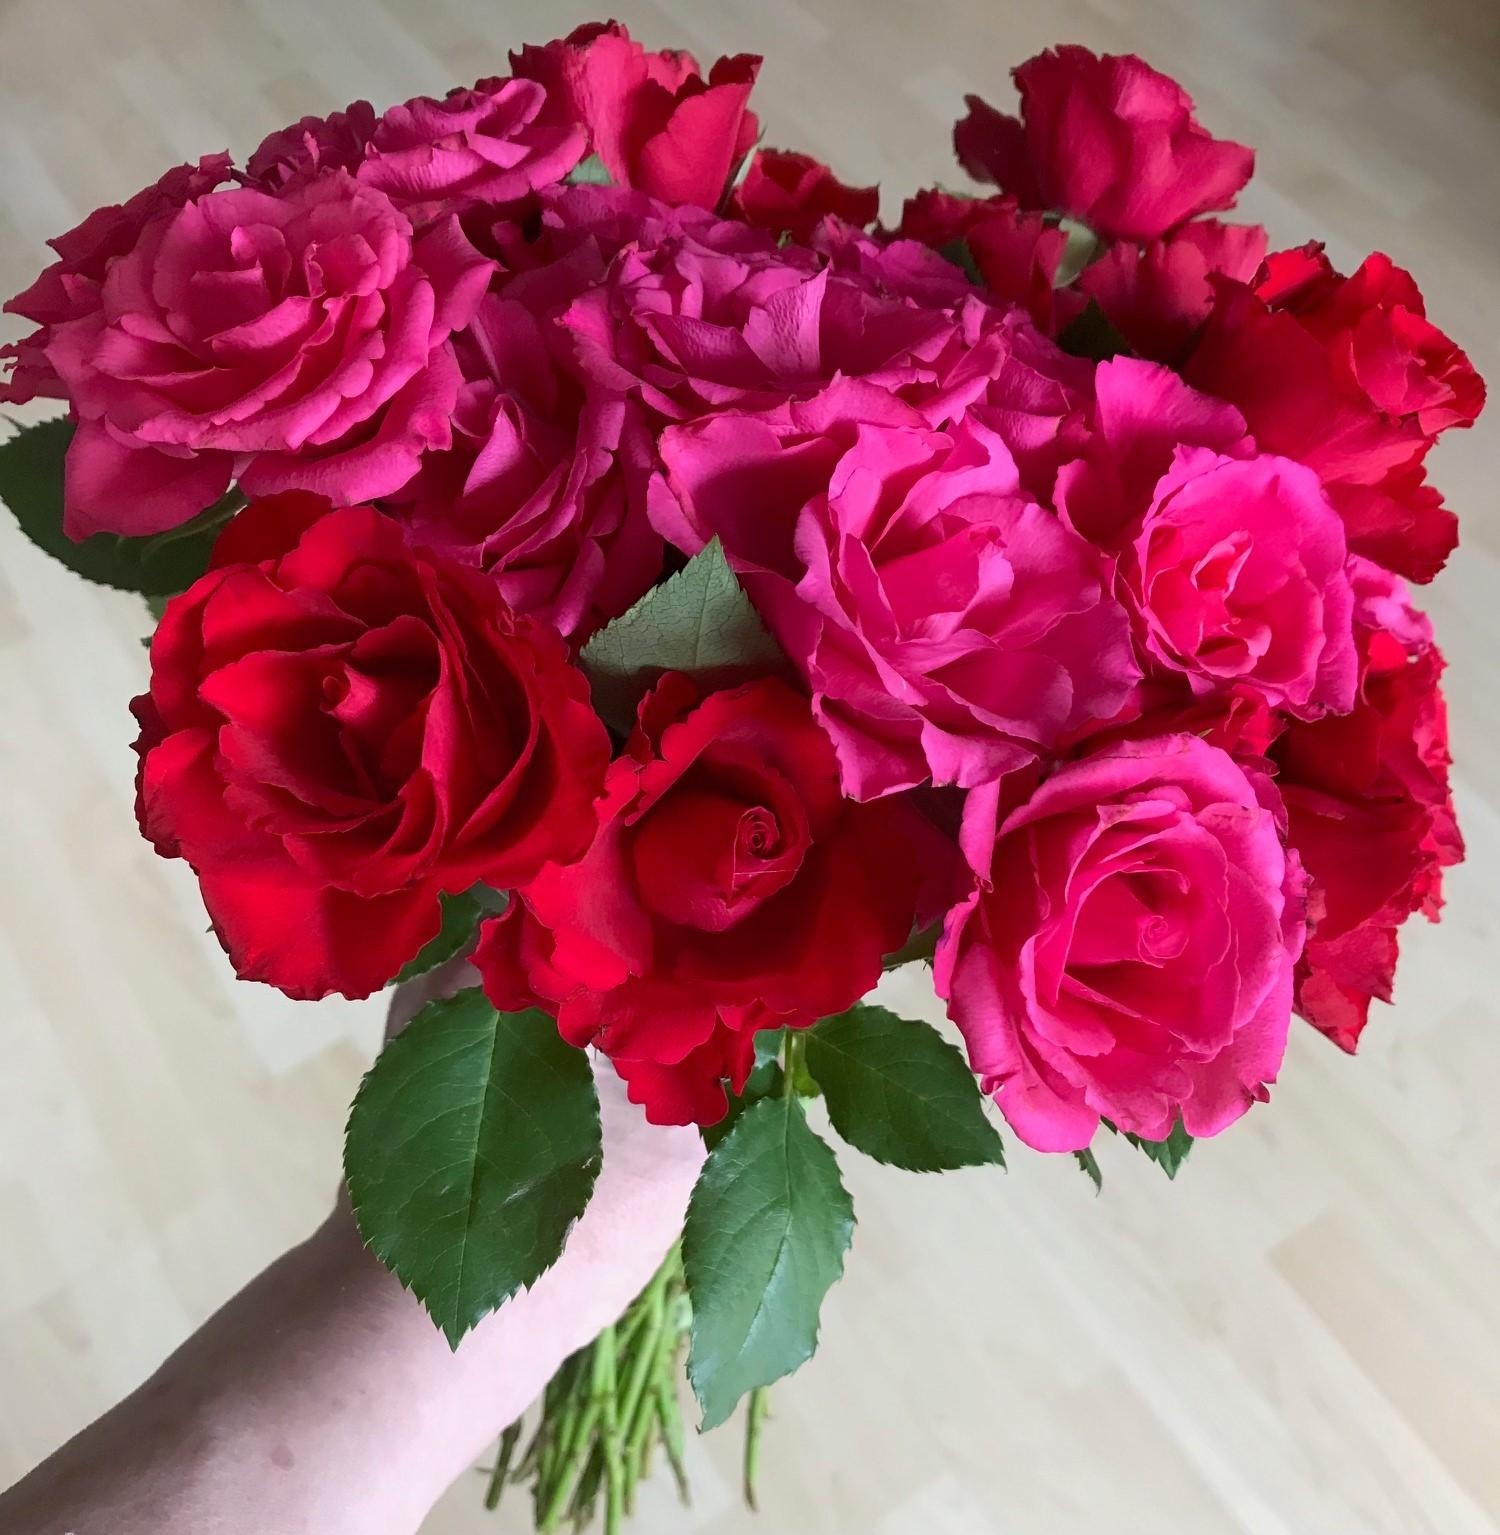 Heute gab es rote Rosen, einfach nur so :)
#rosenliebe #blumenliebe